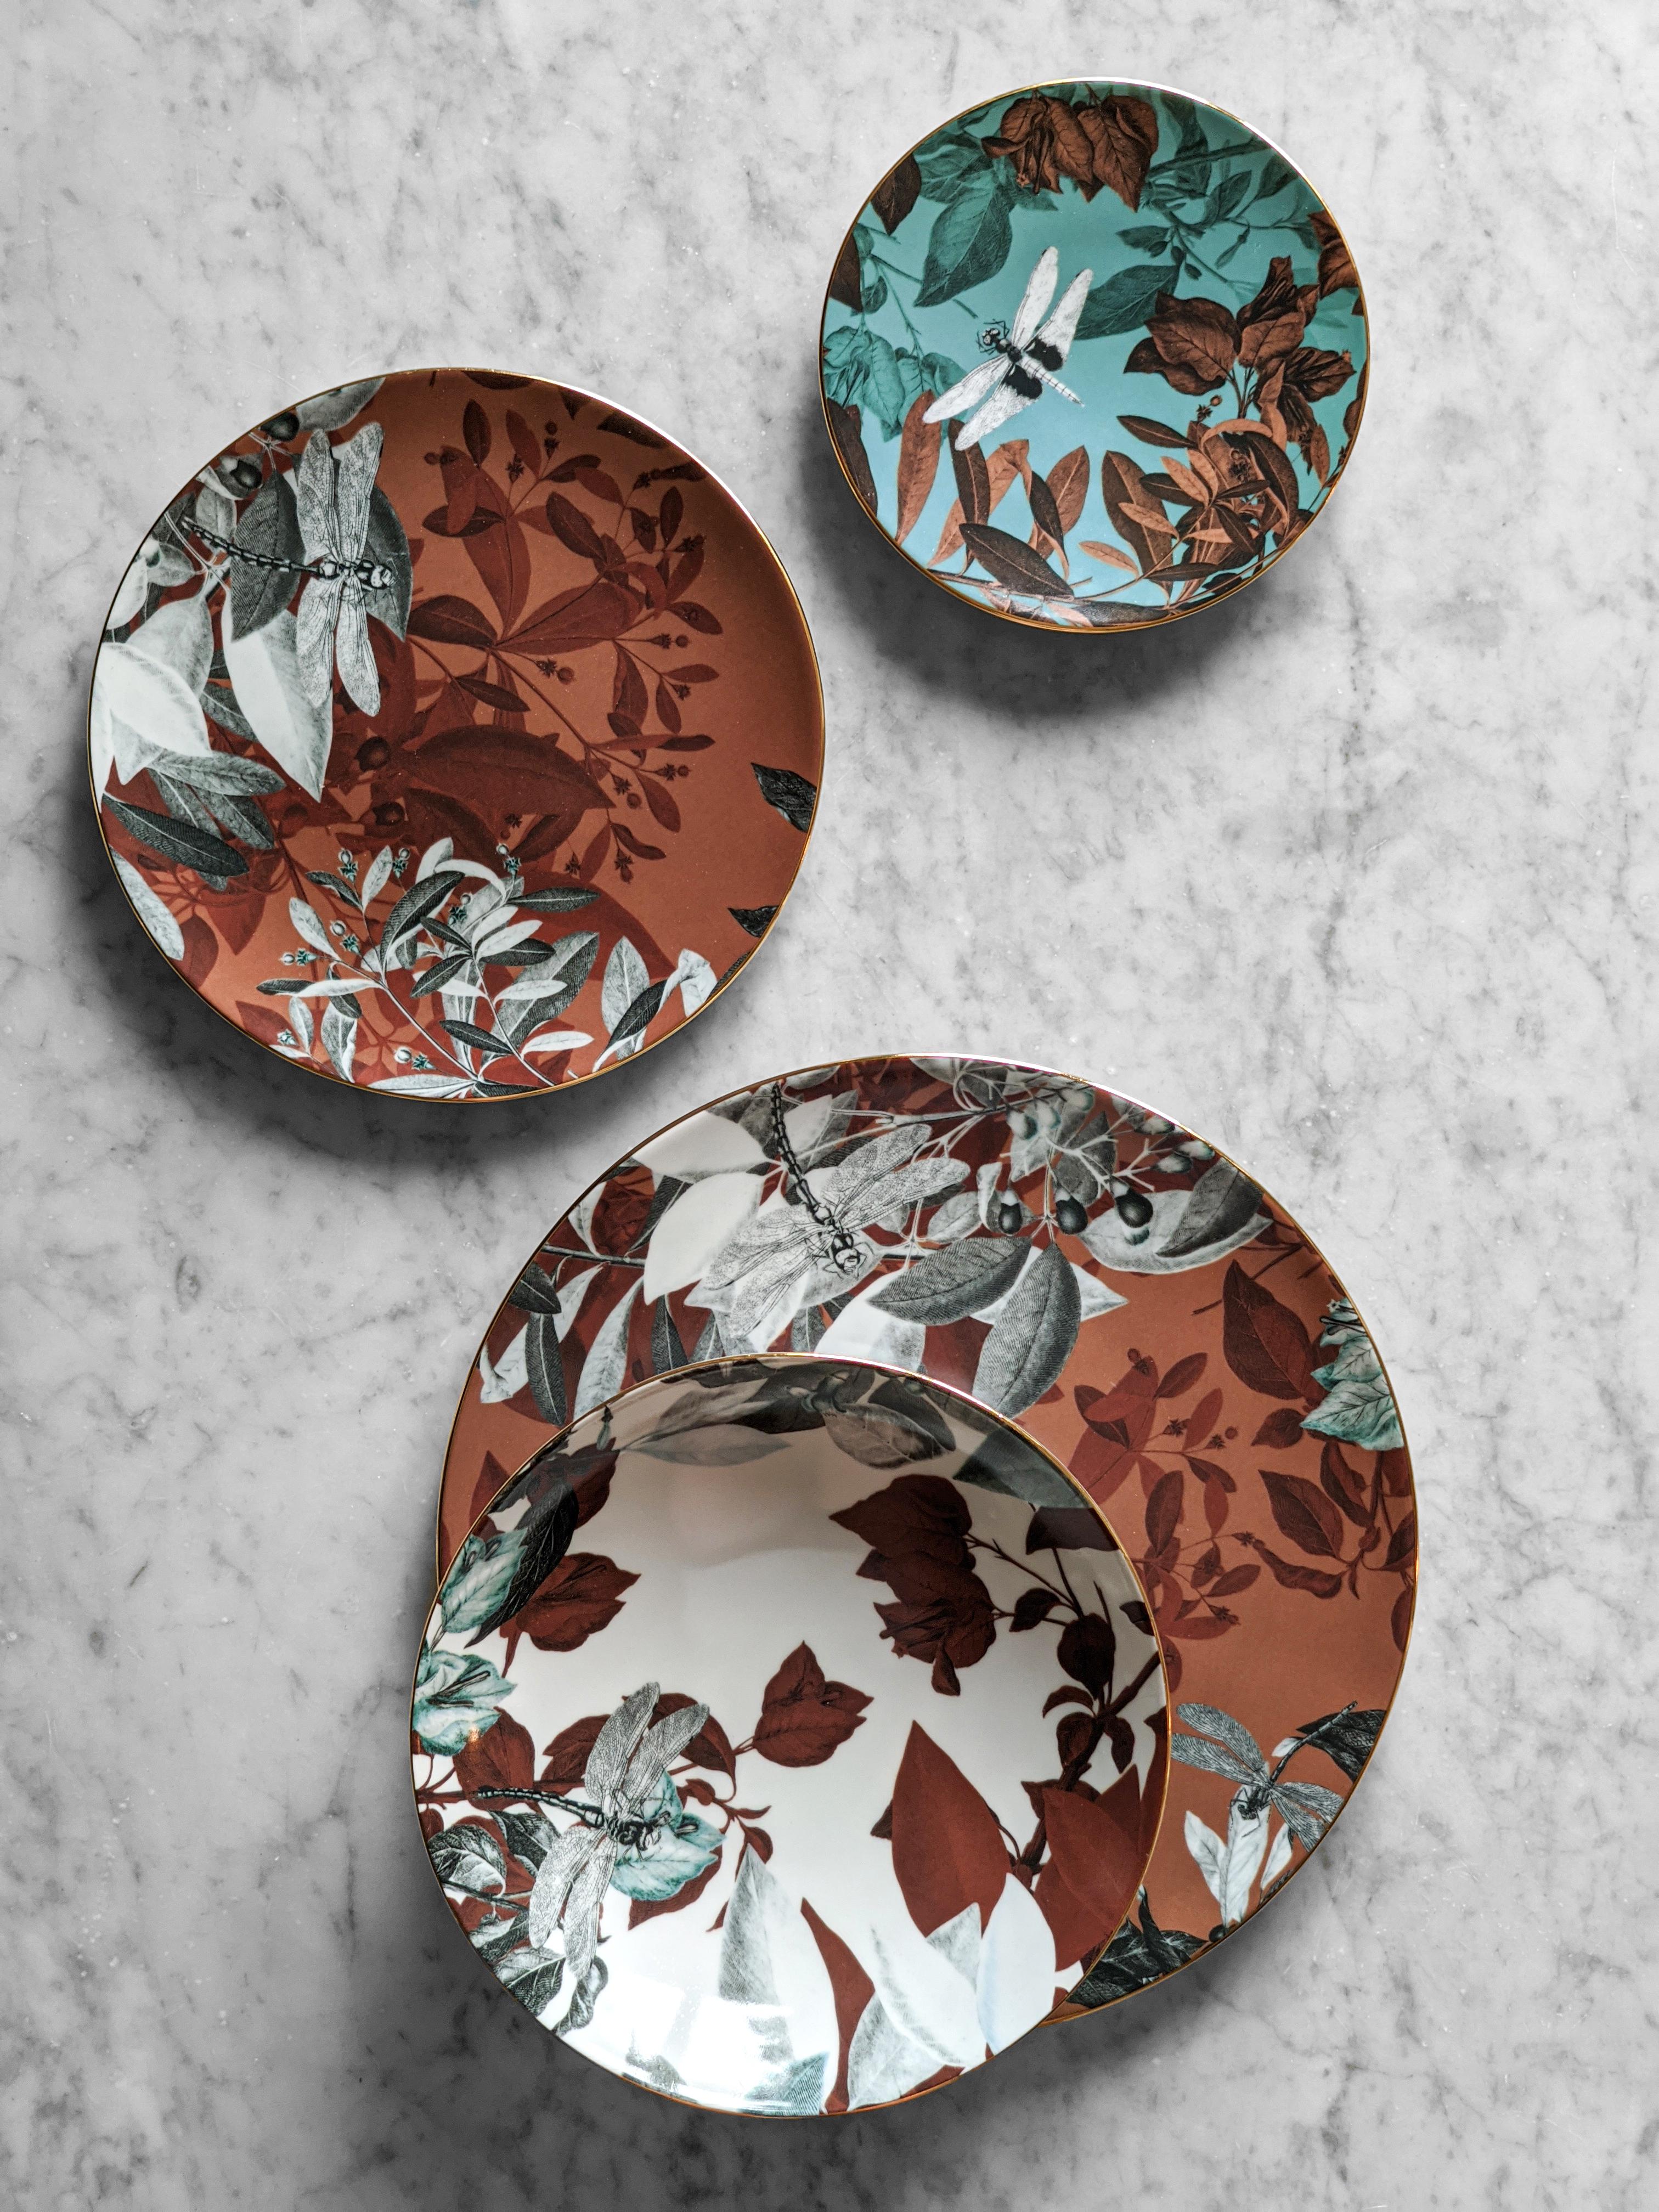 Black Dragon, Six Contemporary Porcelain soup plates with Decorative Design For Sale 5